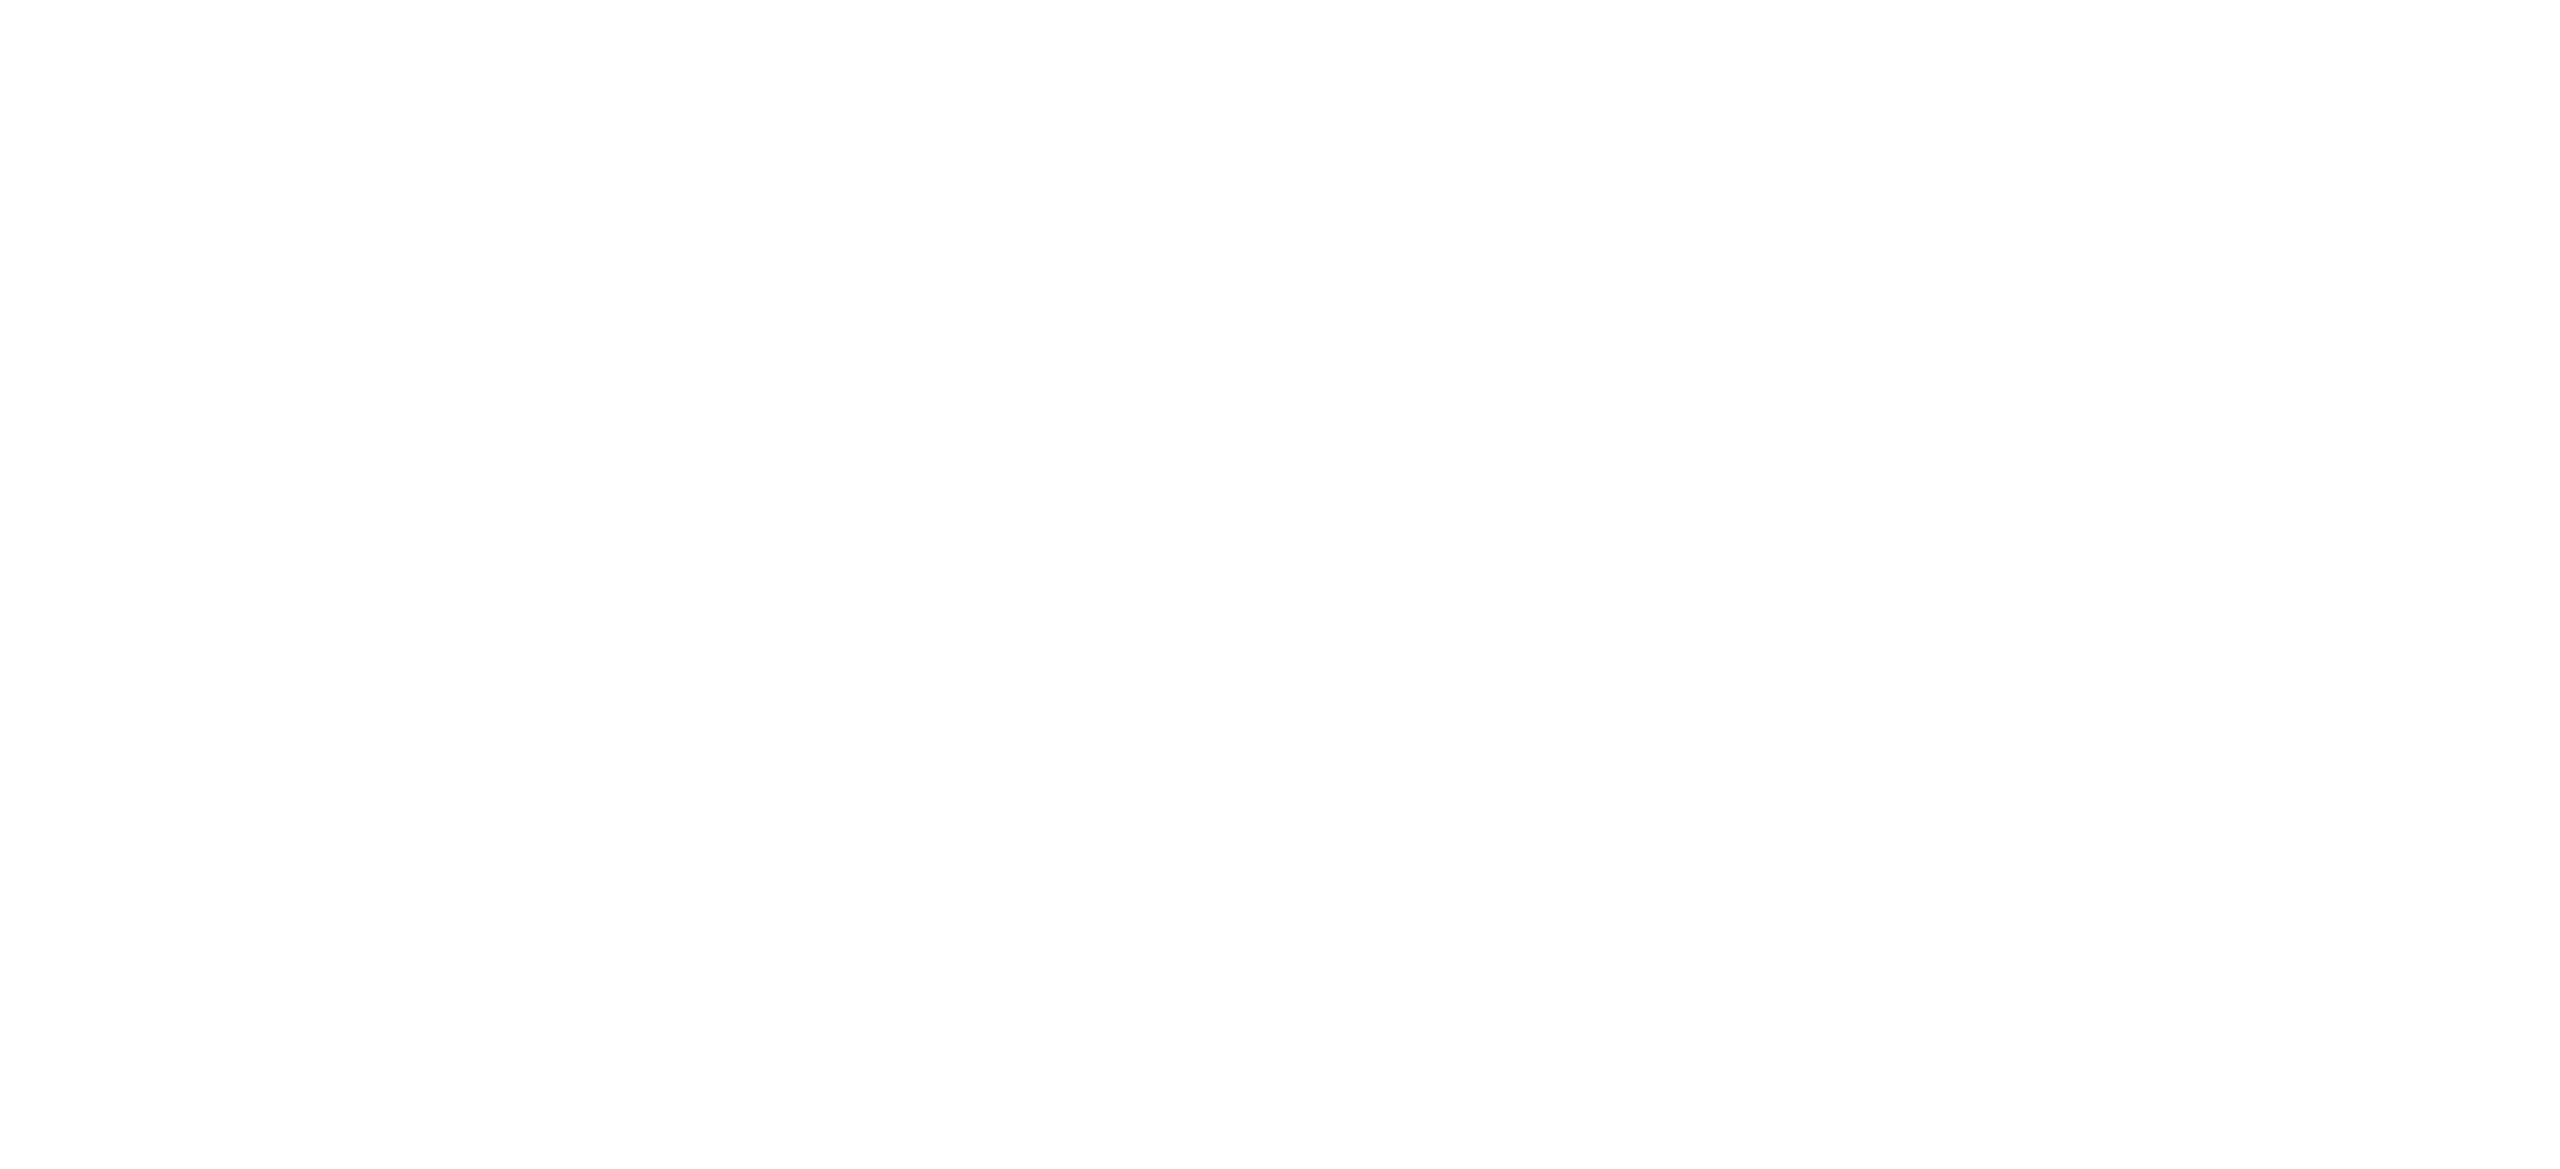 FireRock Grille logo